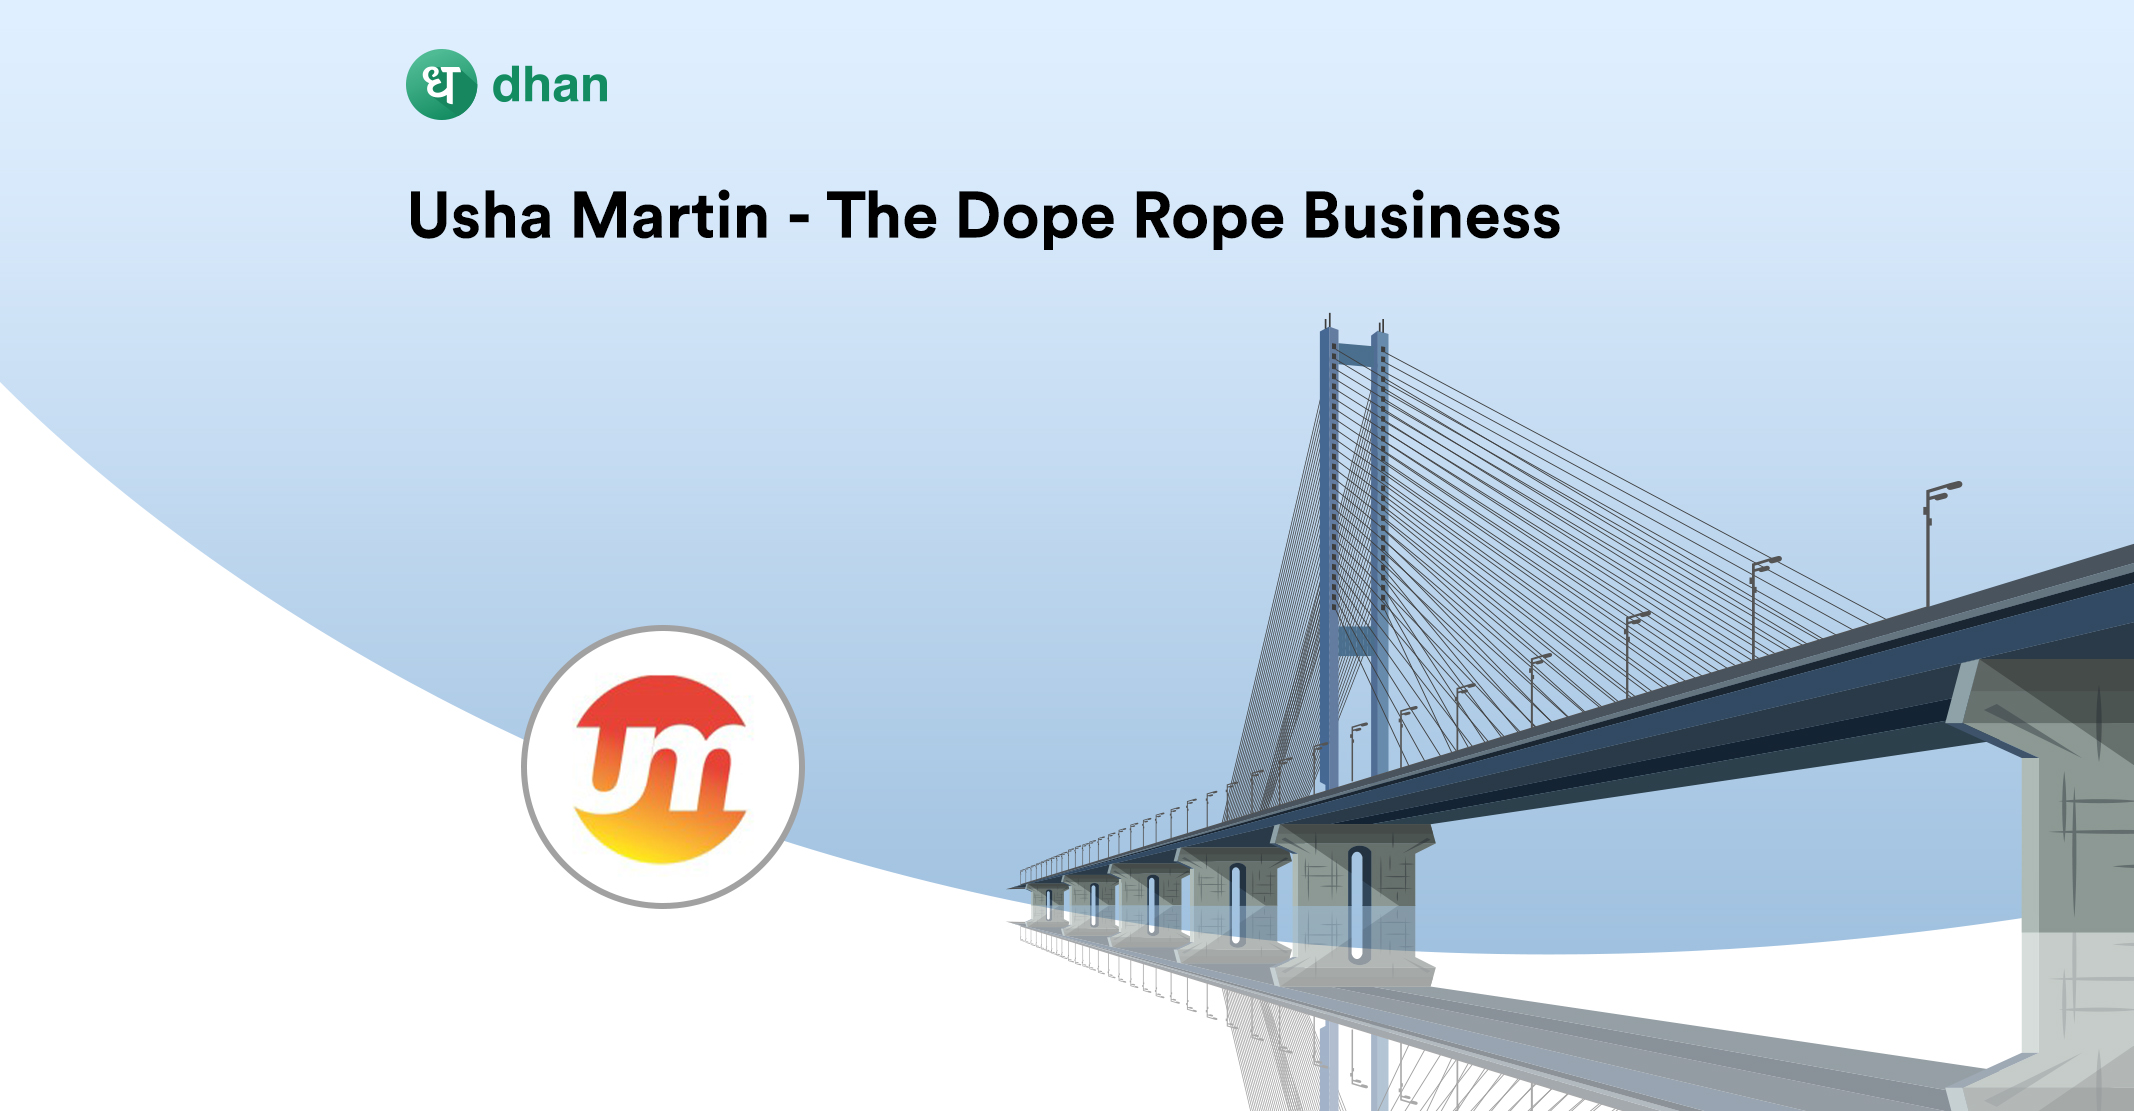 Usha Martin- the dope rope business story